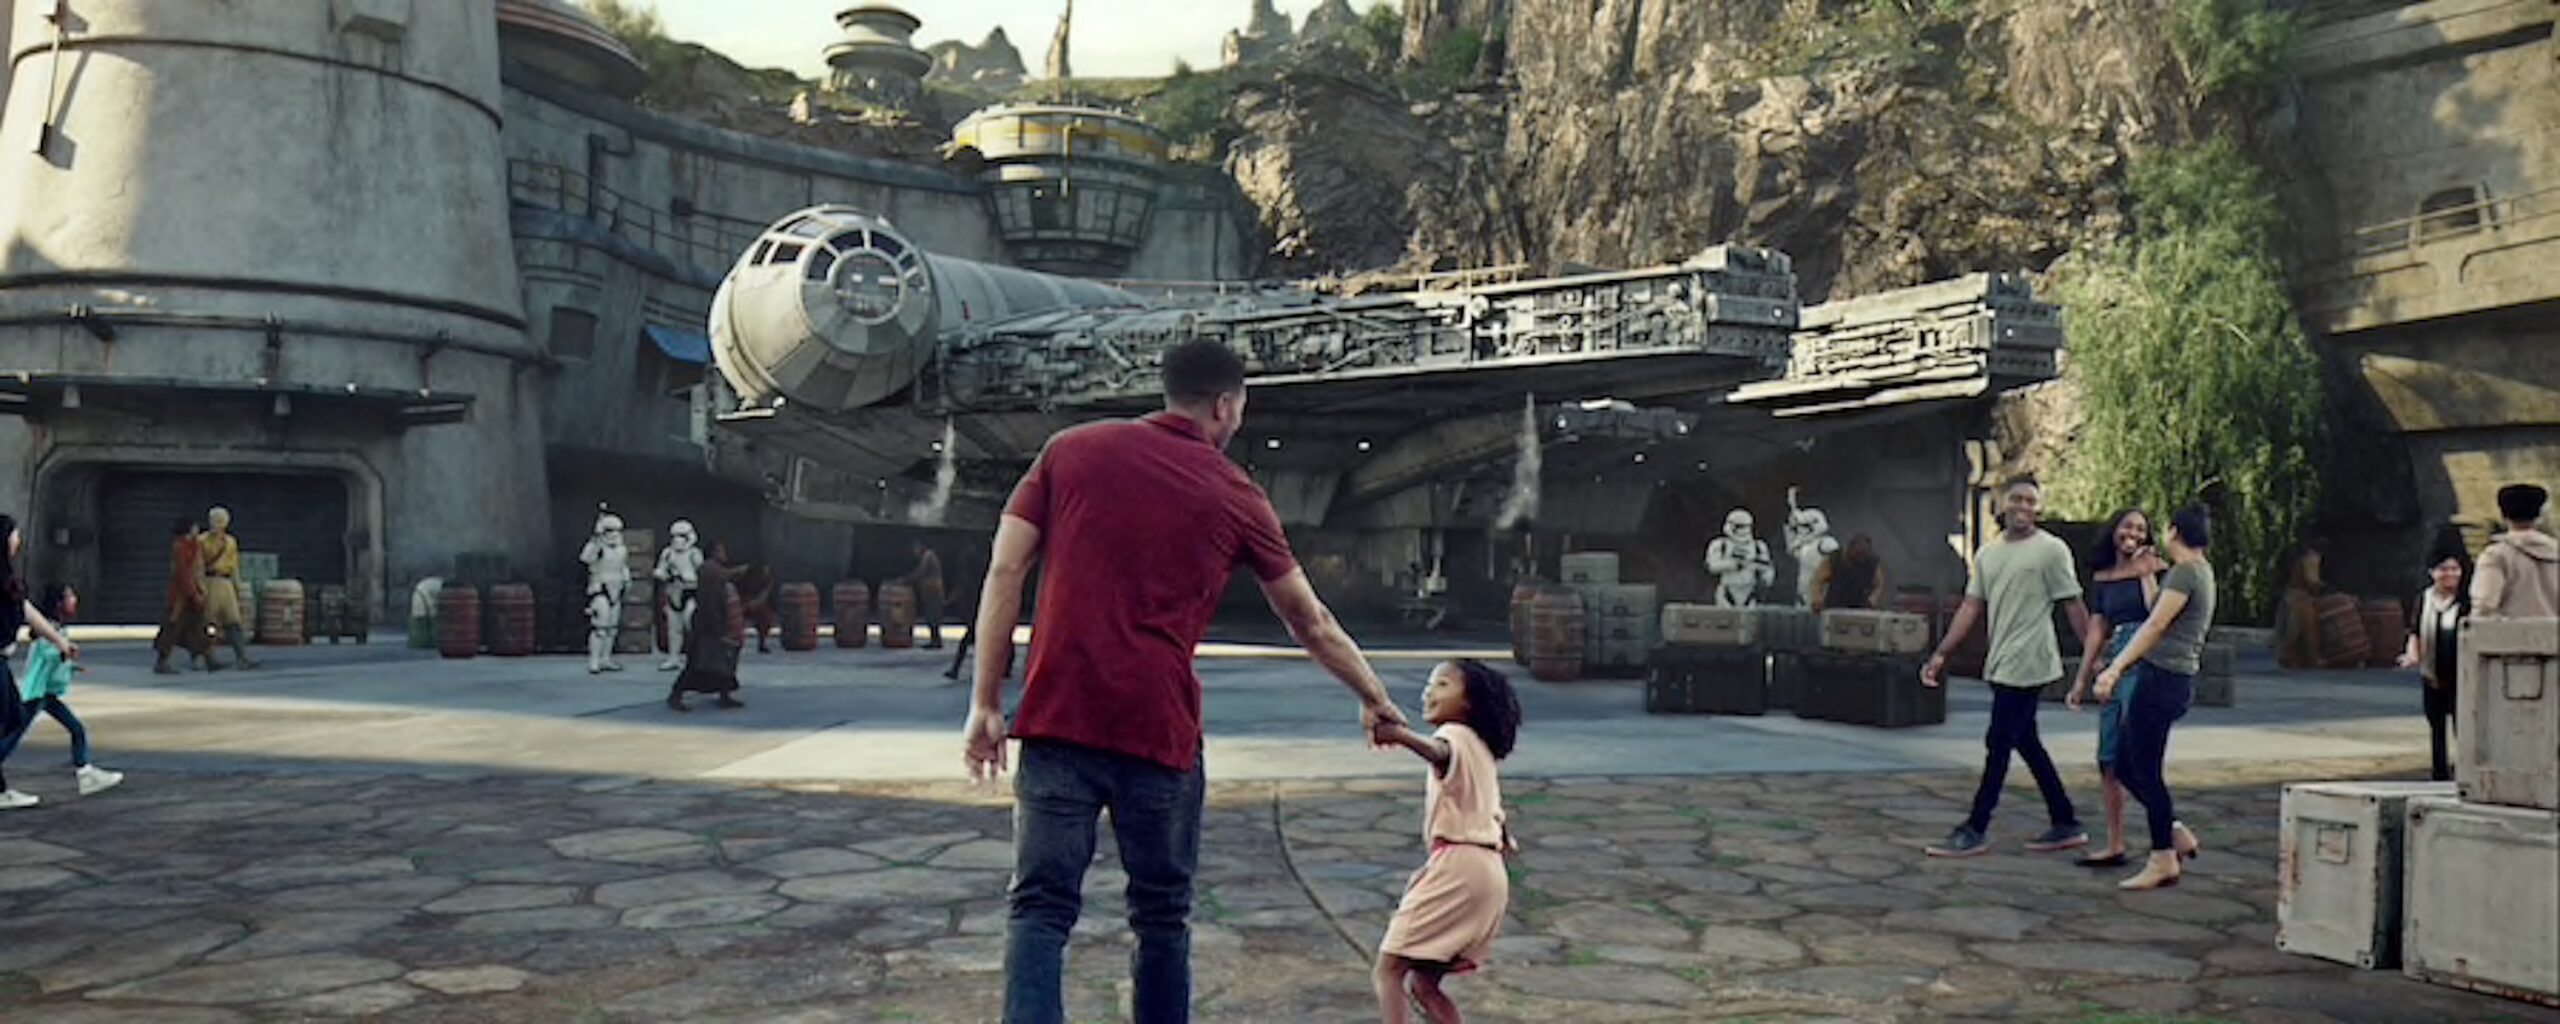 Star Wars inaugura parque temático en Disneyland